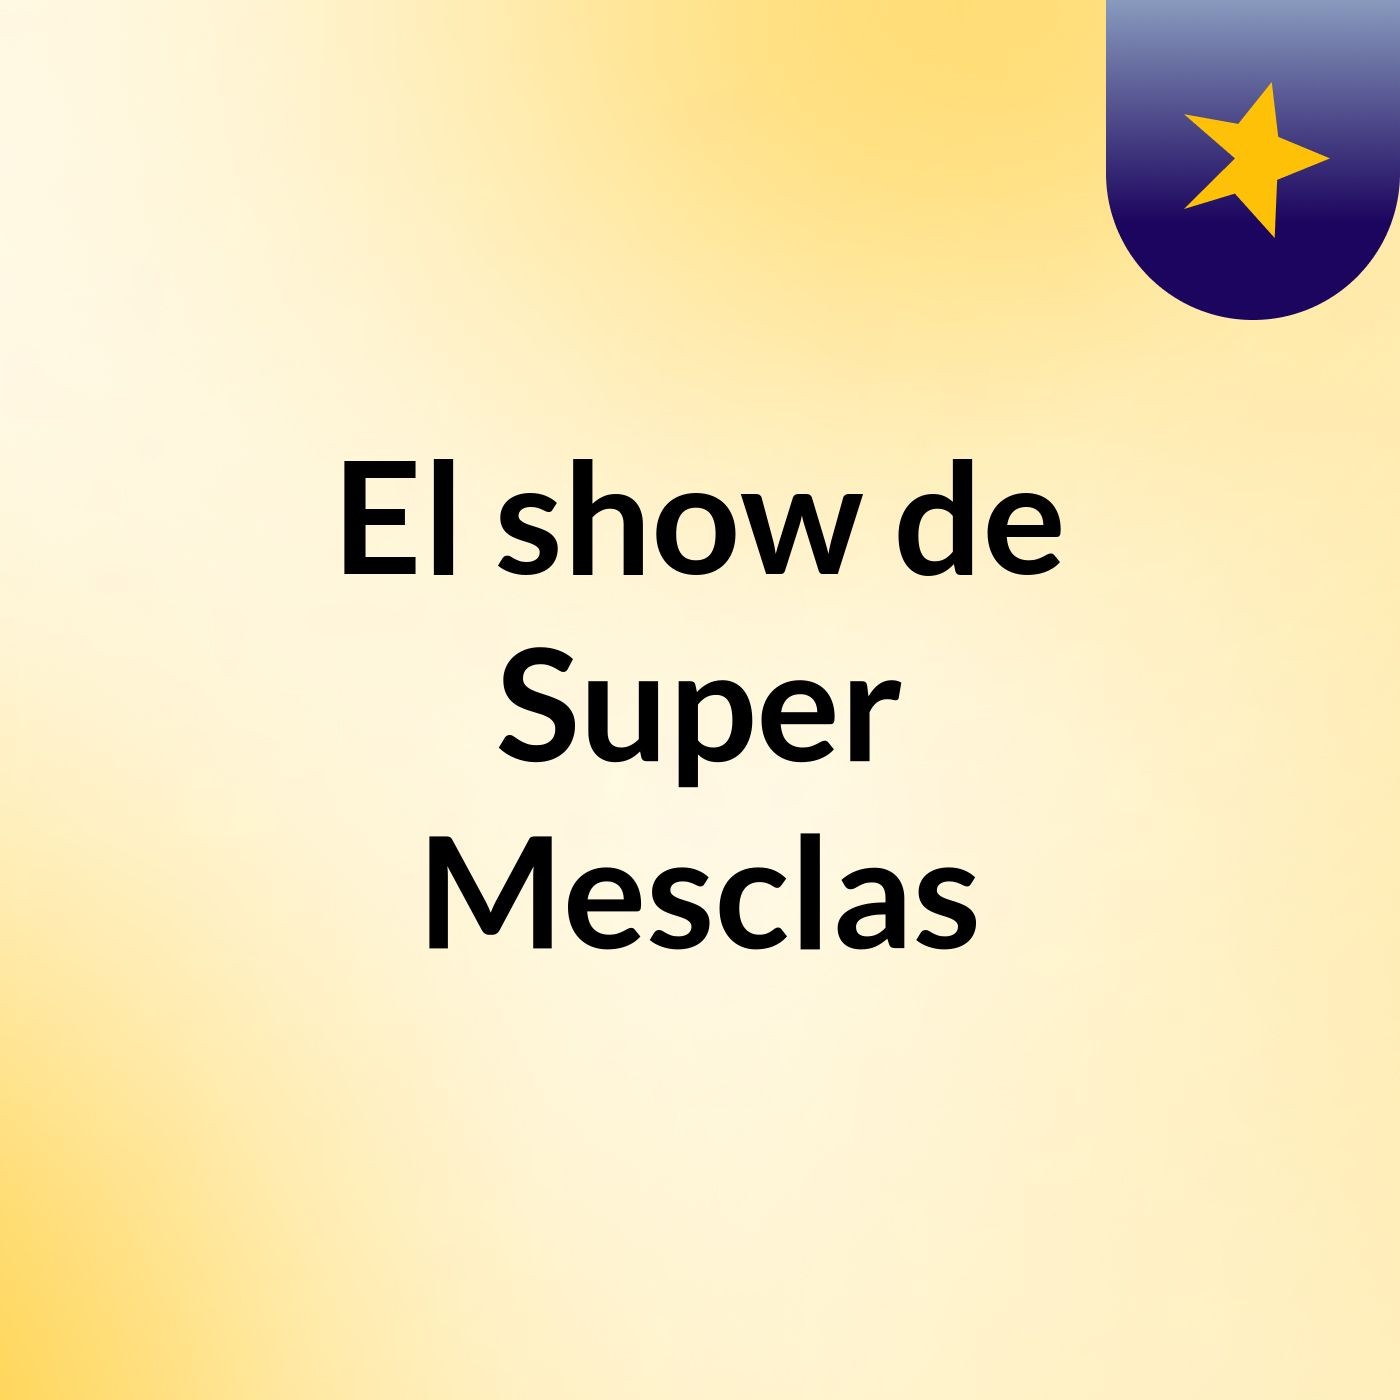 El show de Super Mesclas